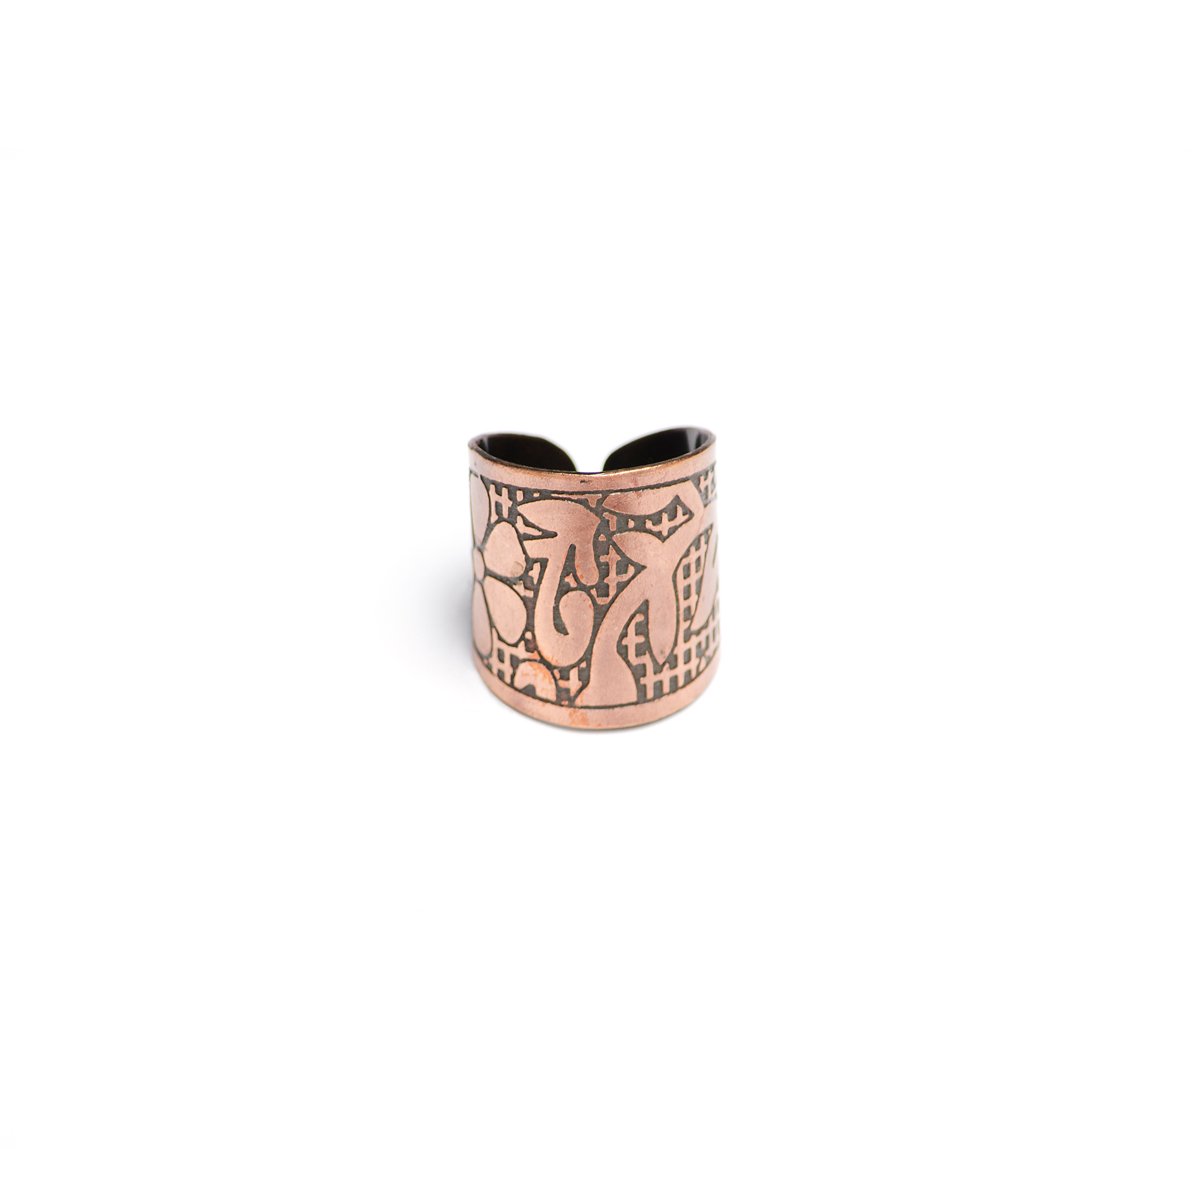 Angelco Accessories Copper finger cuff